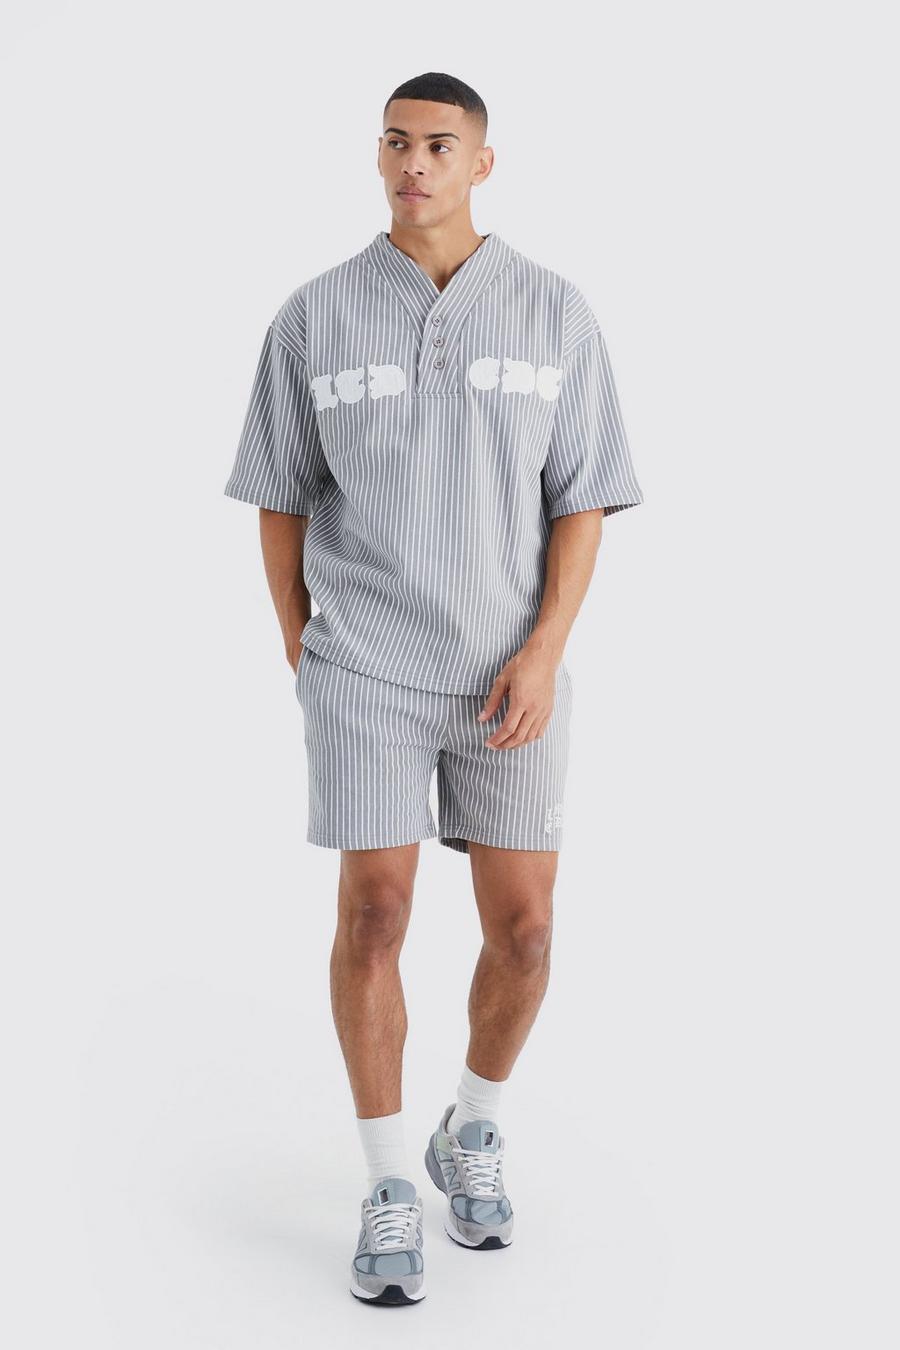 Charcoal Oversize randig baseballskjorta och shorts